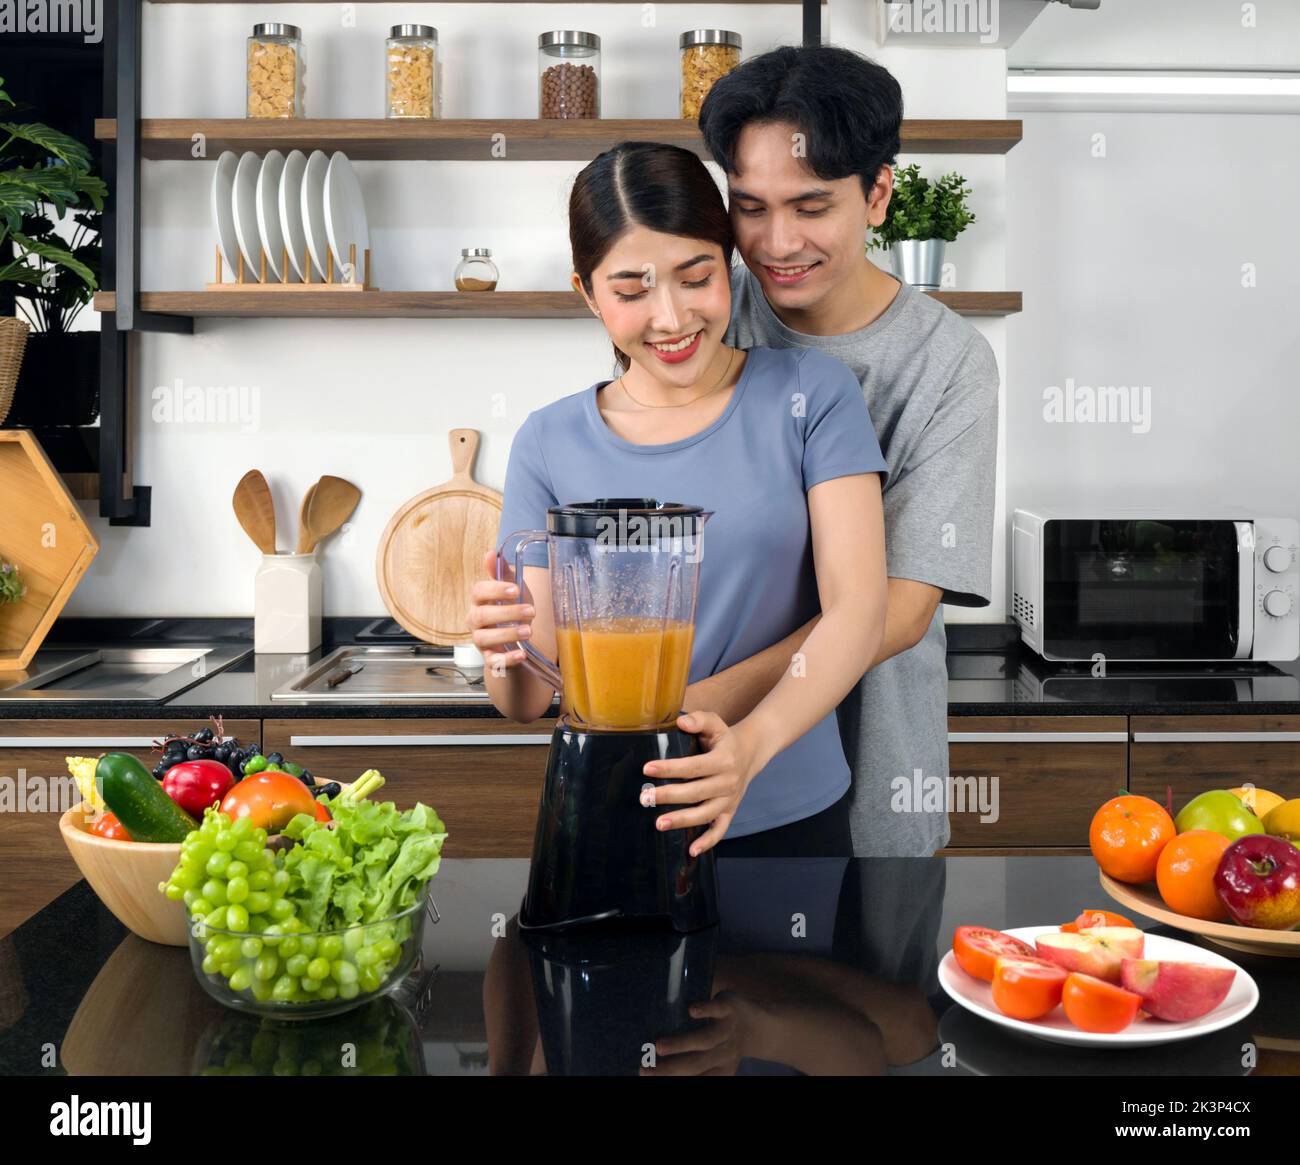 Junge asiatische Frau mit Mischmaschine mischen Obst und Gemüse in Smoothie. Ihr Freund kuschelt von hinten. Die Küchentheke voller Vari Stockfoto